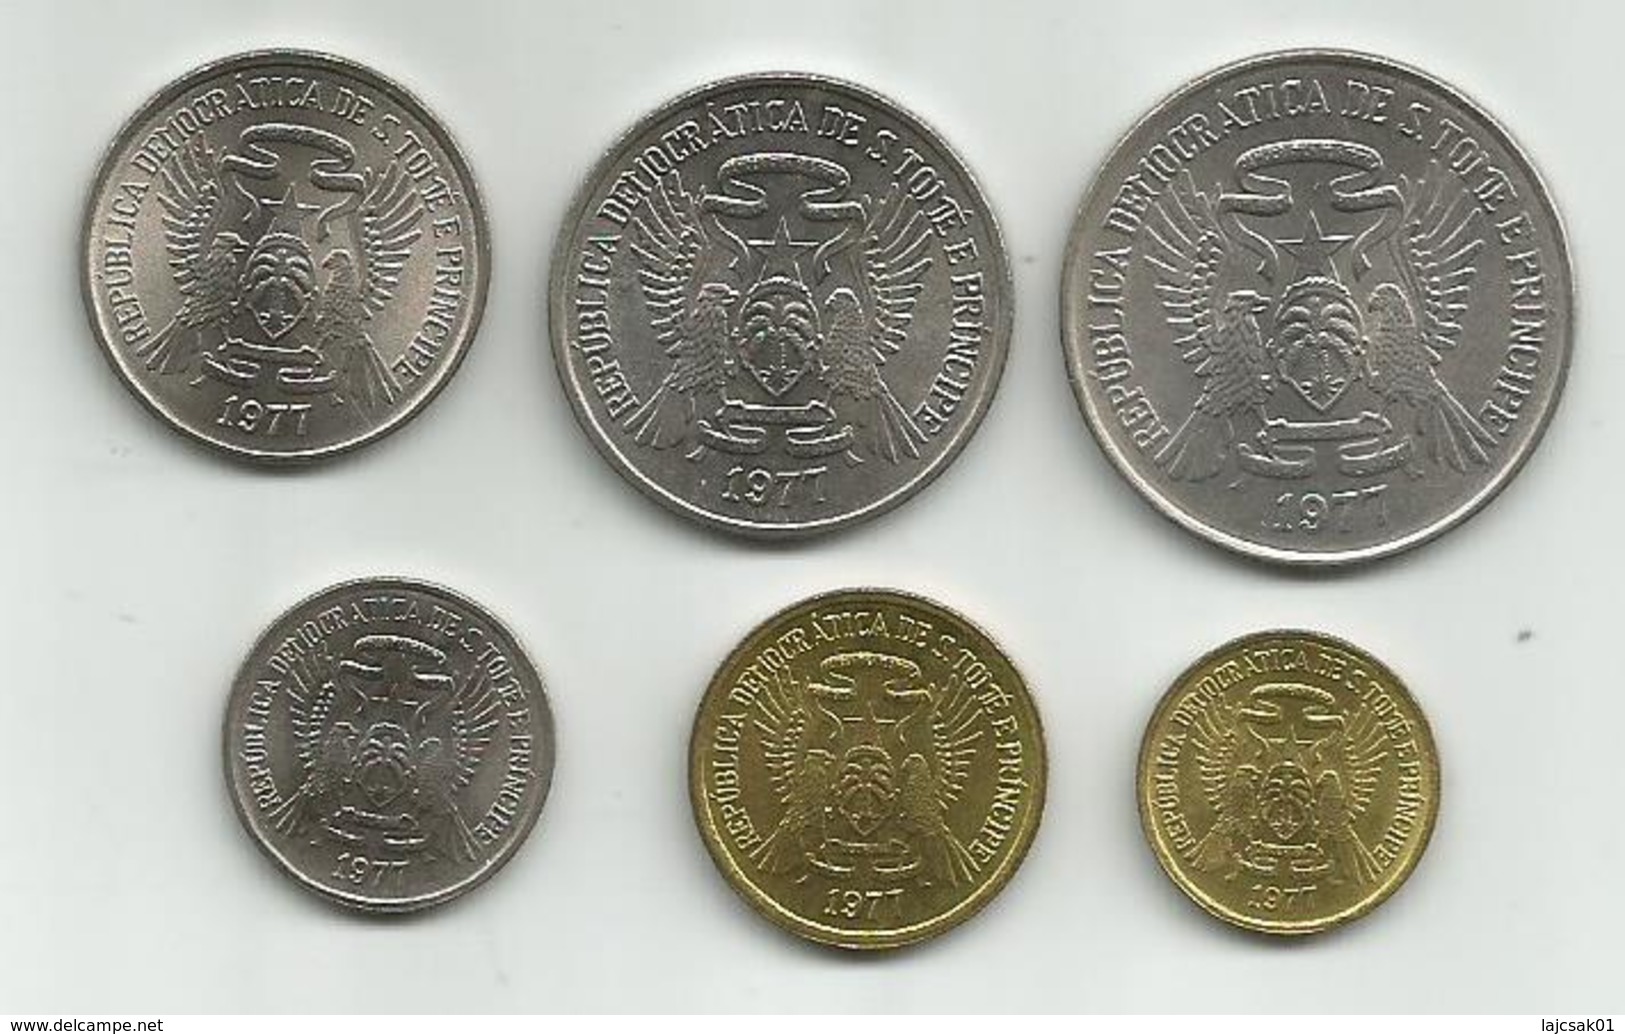 Sao Tome And Principe 1977. 50 Centimos,1 - 2 - 5 - 10 And 20 Dobras,high Grade - Sao Tome And Principe